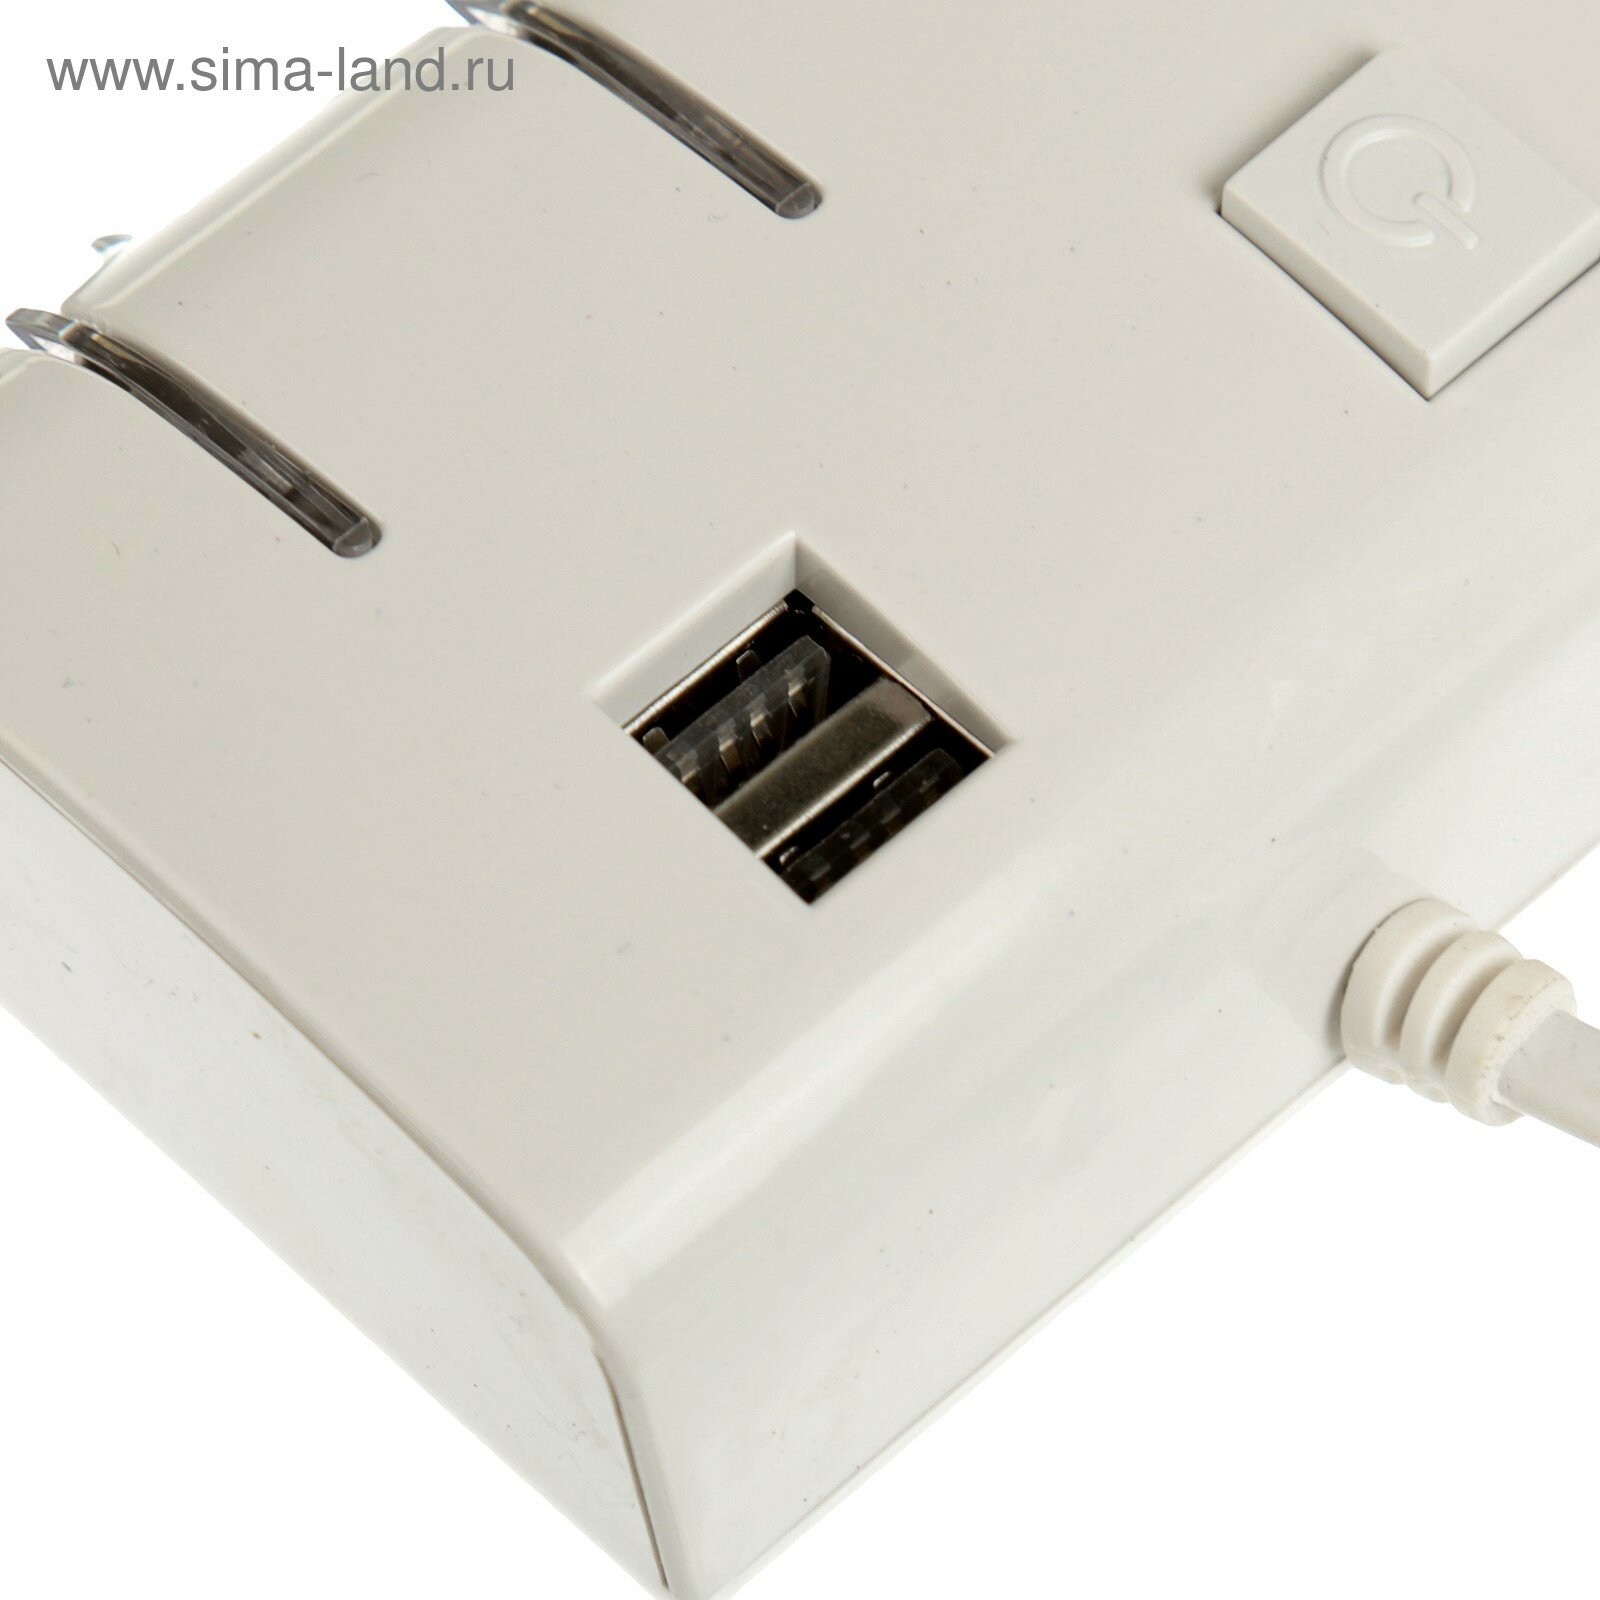 Разветвитель прикуривателя, 3 гнезда, 2 USB 1 А, 60 Вт, 12/24 В, подсветка, провод 70 см (1шт.)